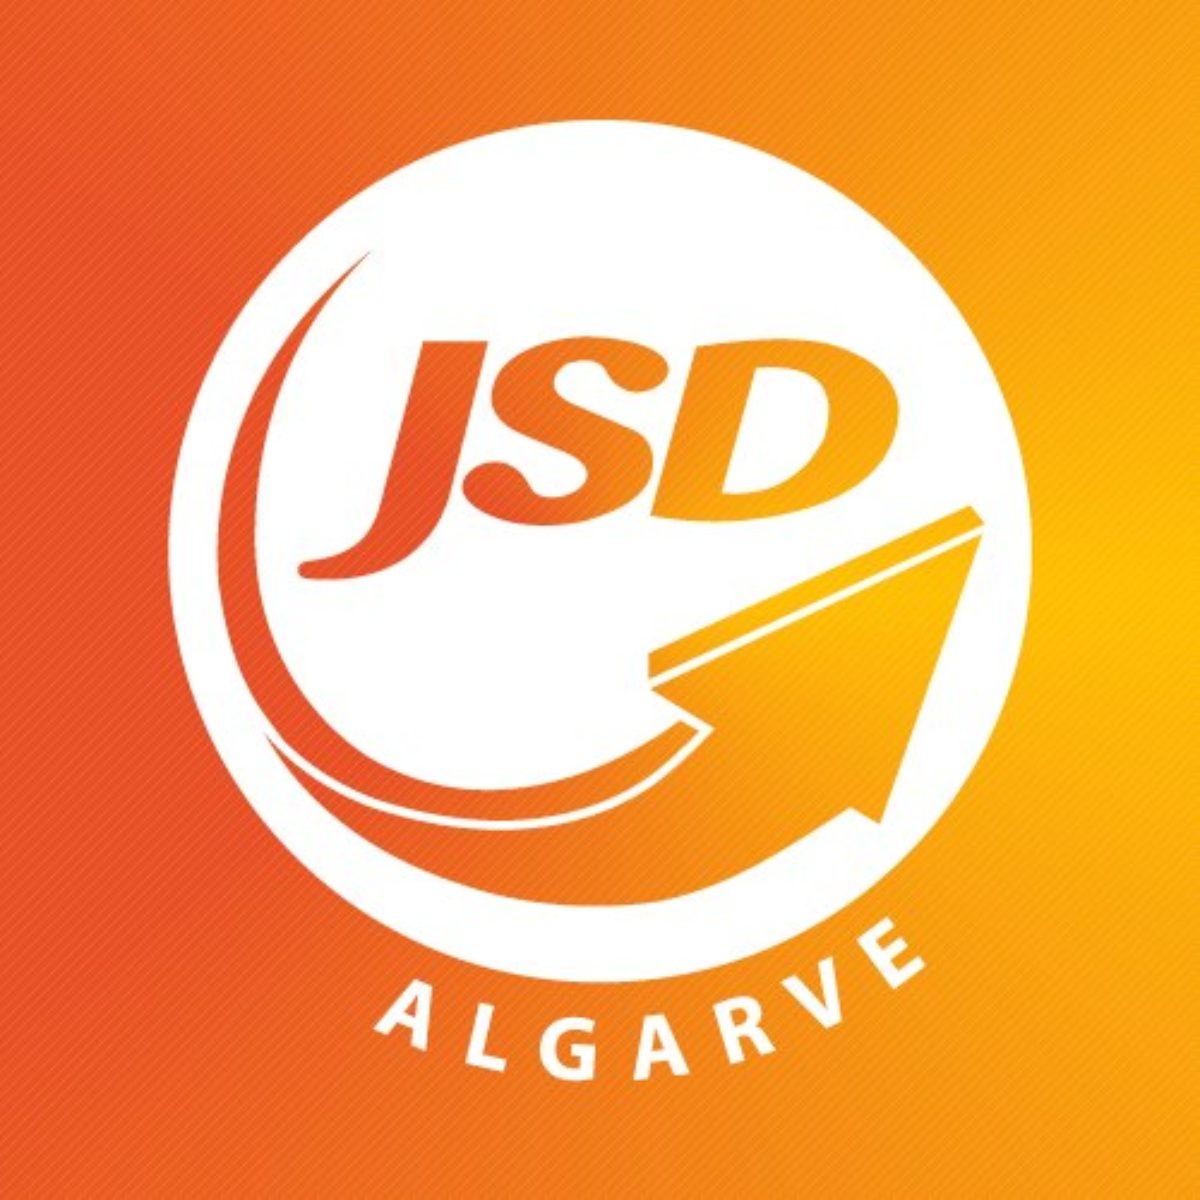 JSD Algarve vê aprovada a sua Proposta de Recomendação à Assembleia Intermunicipal do Algarve intitulada “Seca no Algarve, Pressão e Soluções”